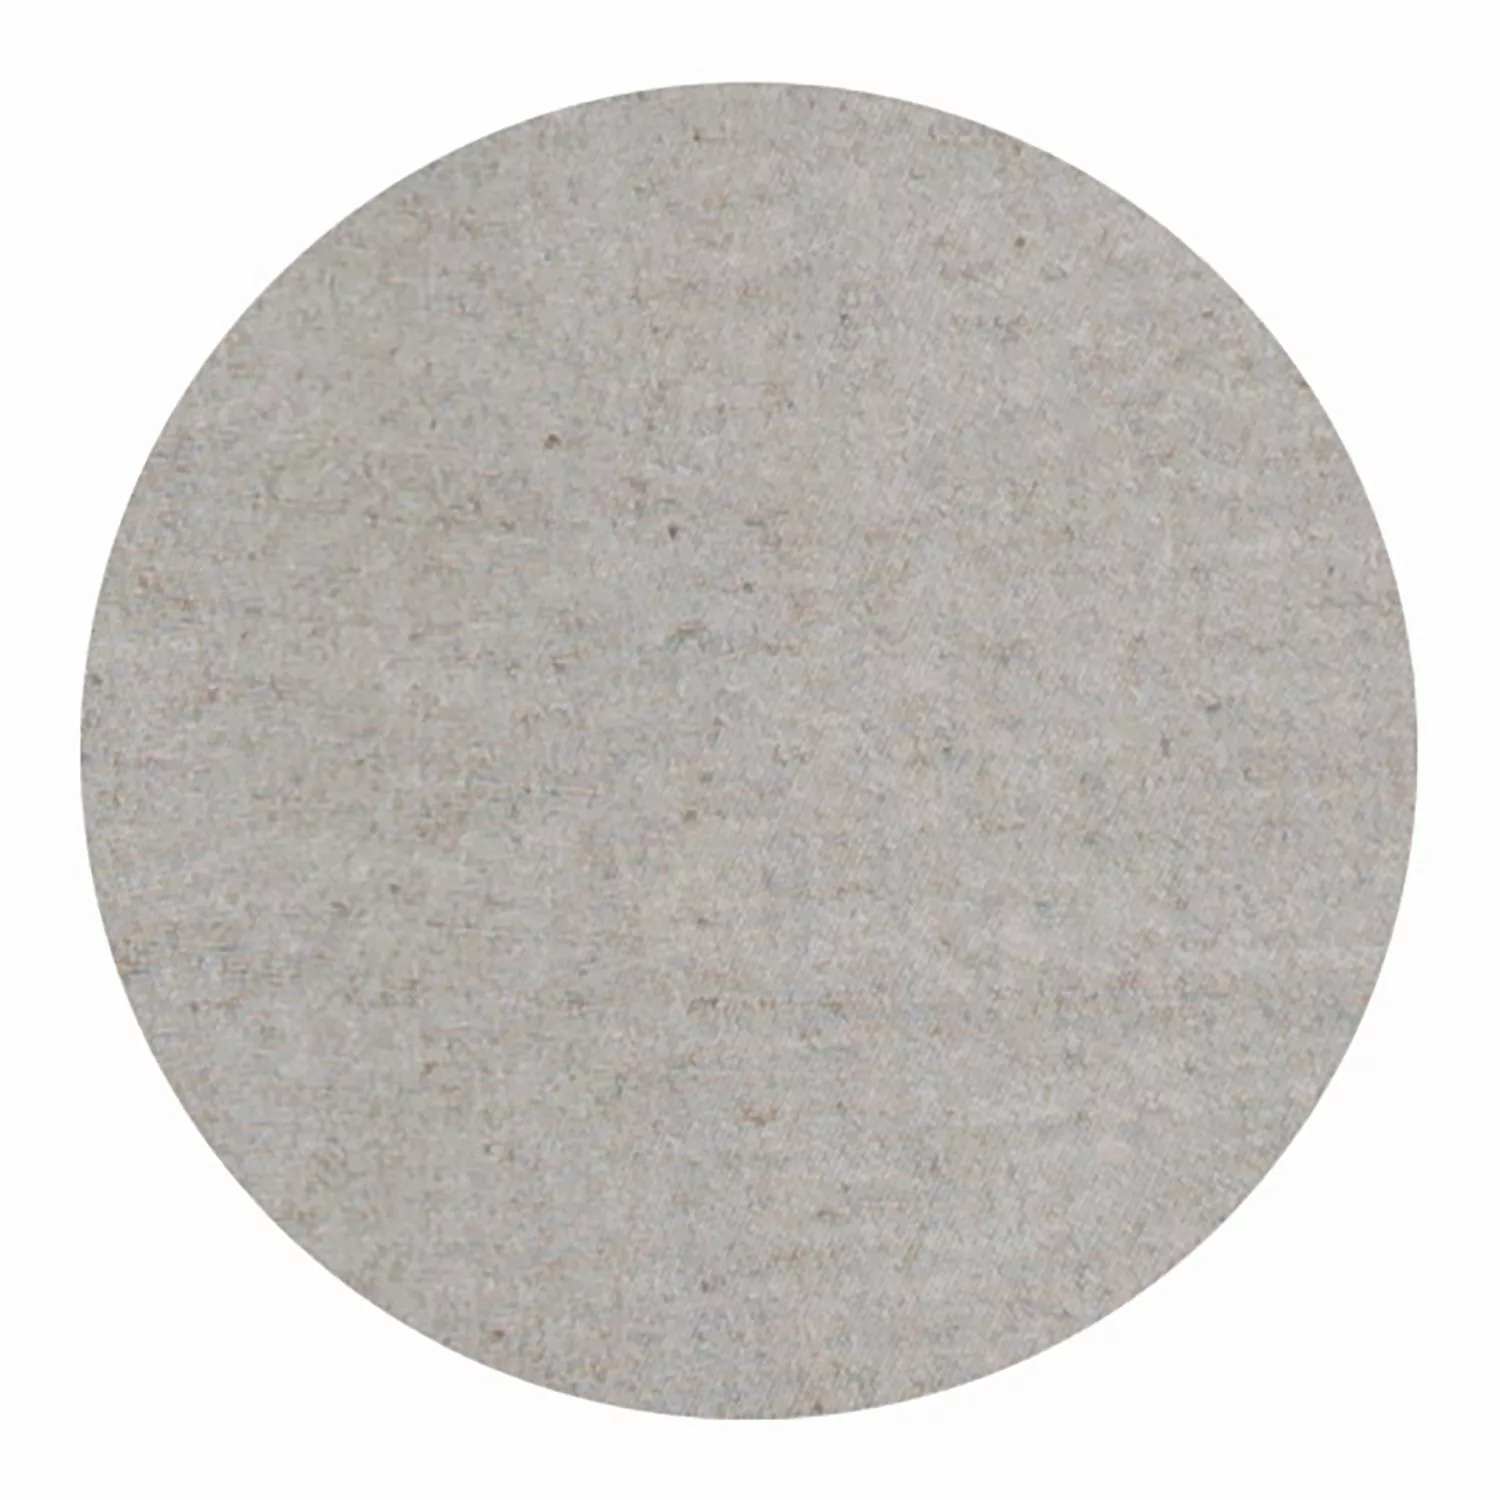 Ösenvorhang Mono • Baumwoll-Polyester Mischung • 140 x 250 cm - Taupe / 1 S günstig online kaufen